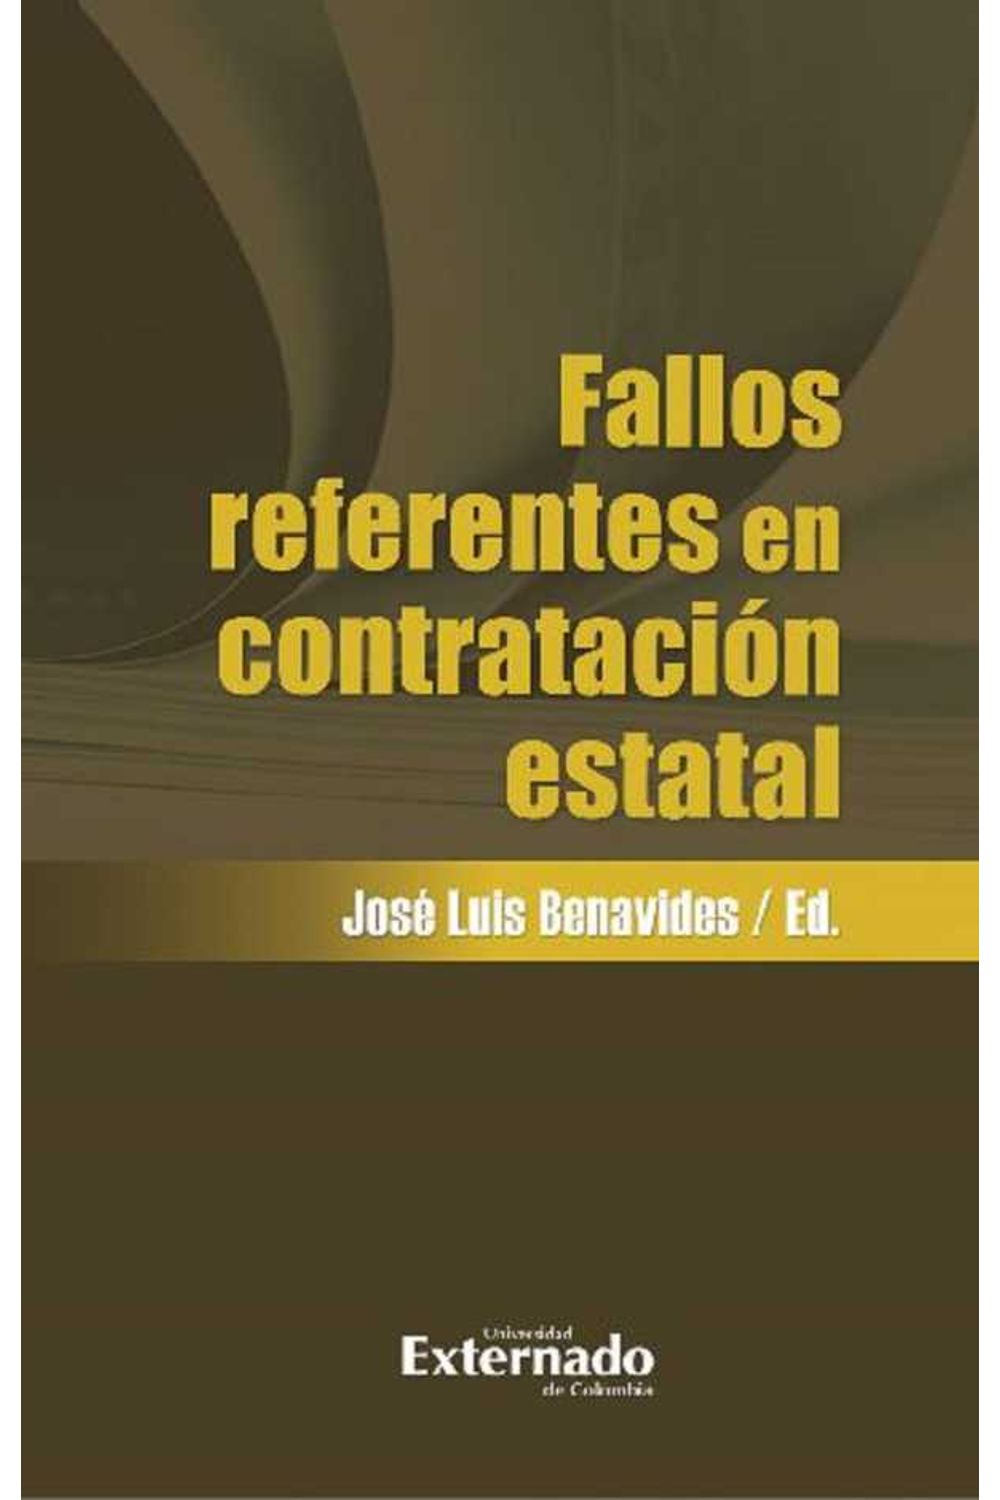 bw-fallos-referentes-en-contratacioacuten-estatal-u-externado-de-colombia-9789587904864